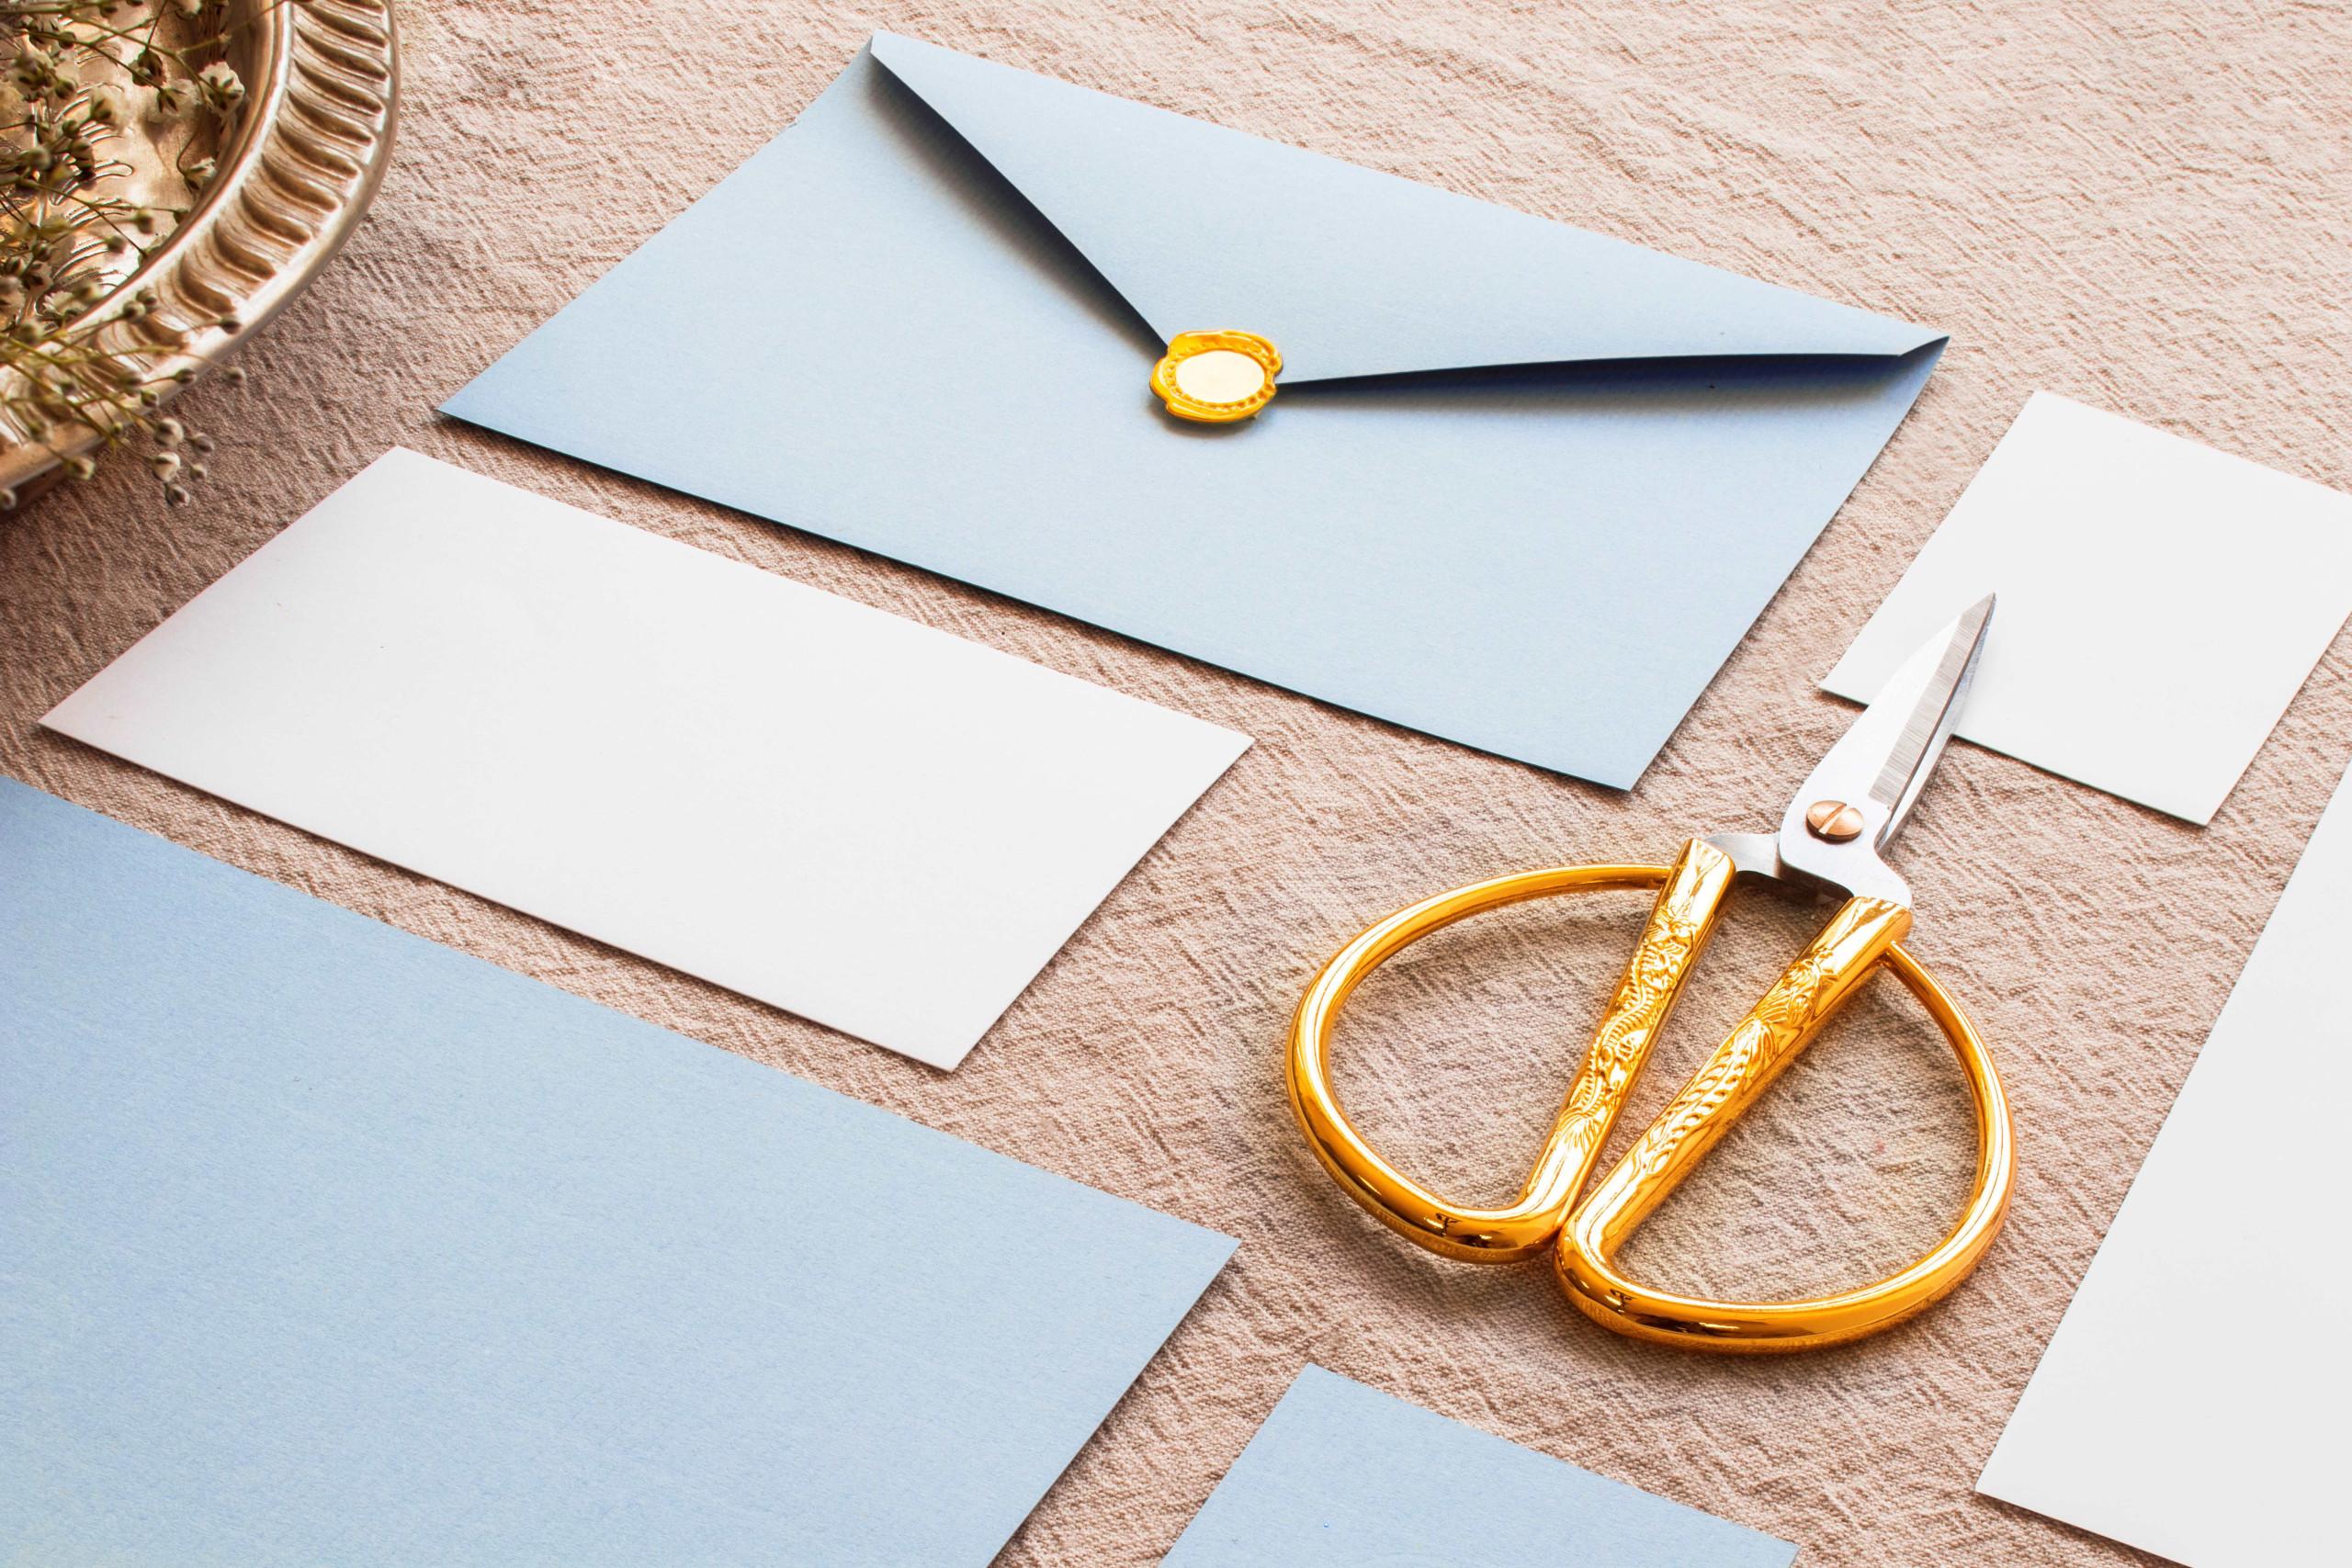 modré a bílé obálky na hnědém podkladu s nůžkami